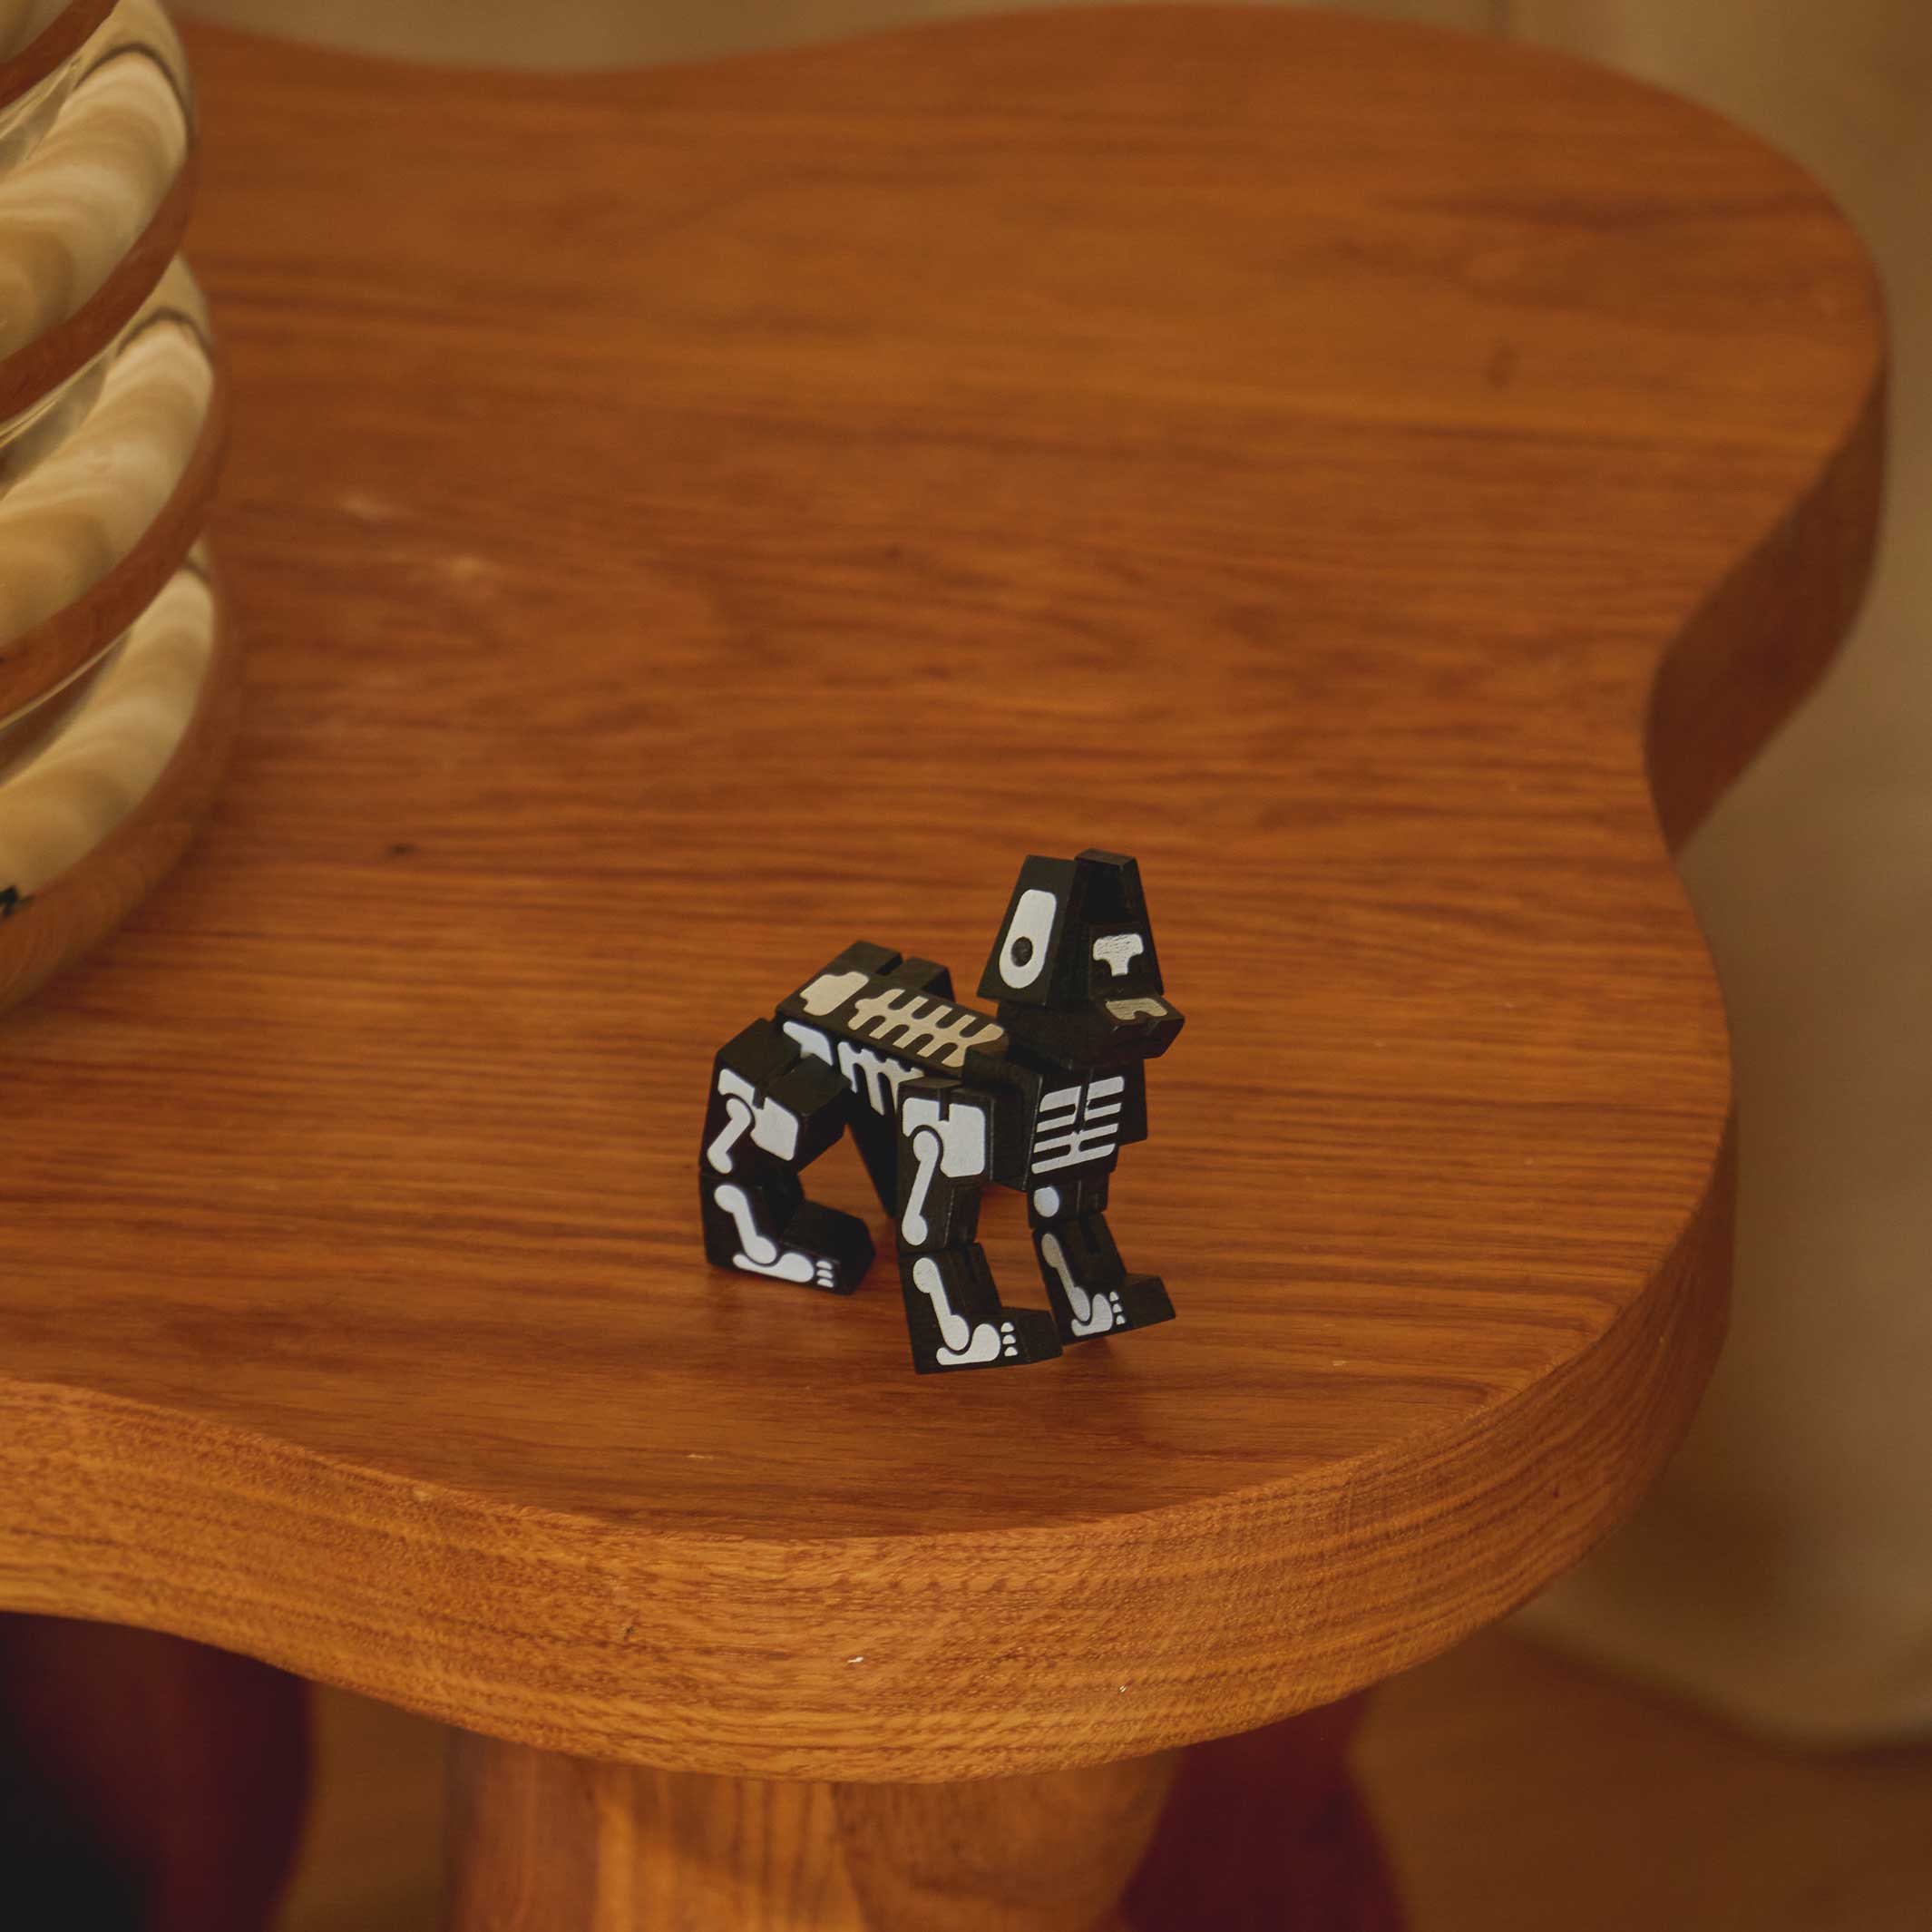 MILO CUBEBOT Micro SQUELETTE | ROBOTS PUZZLES 3D | David Semaines | Sont conscients